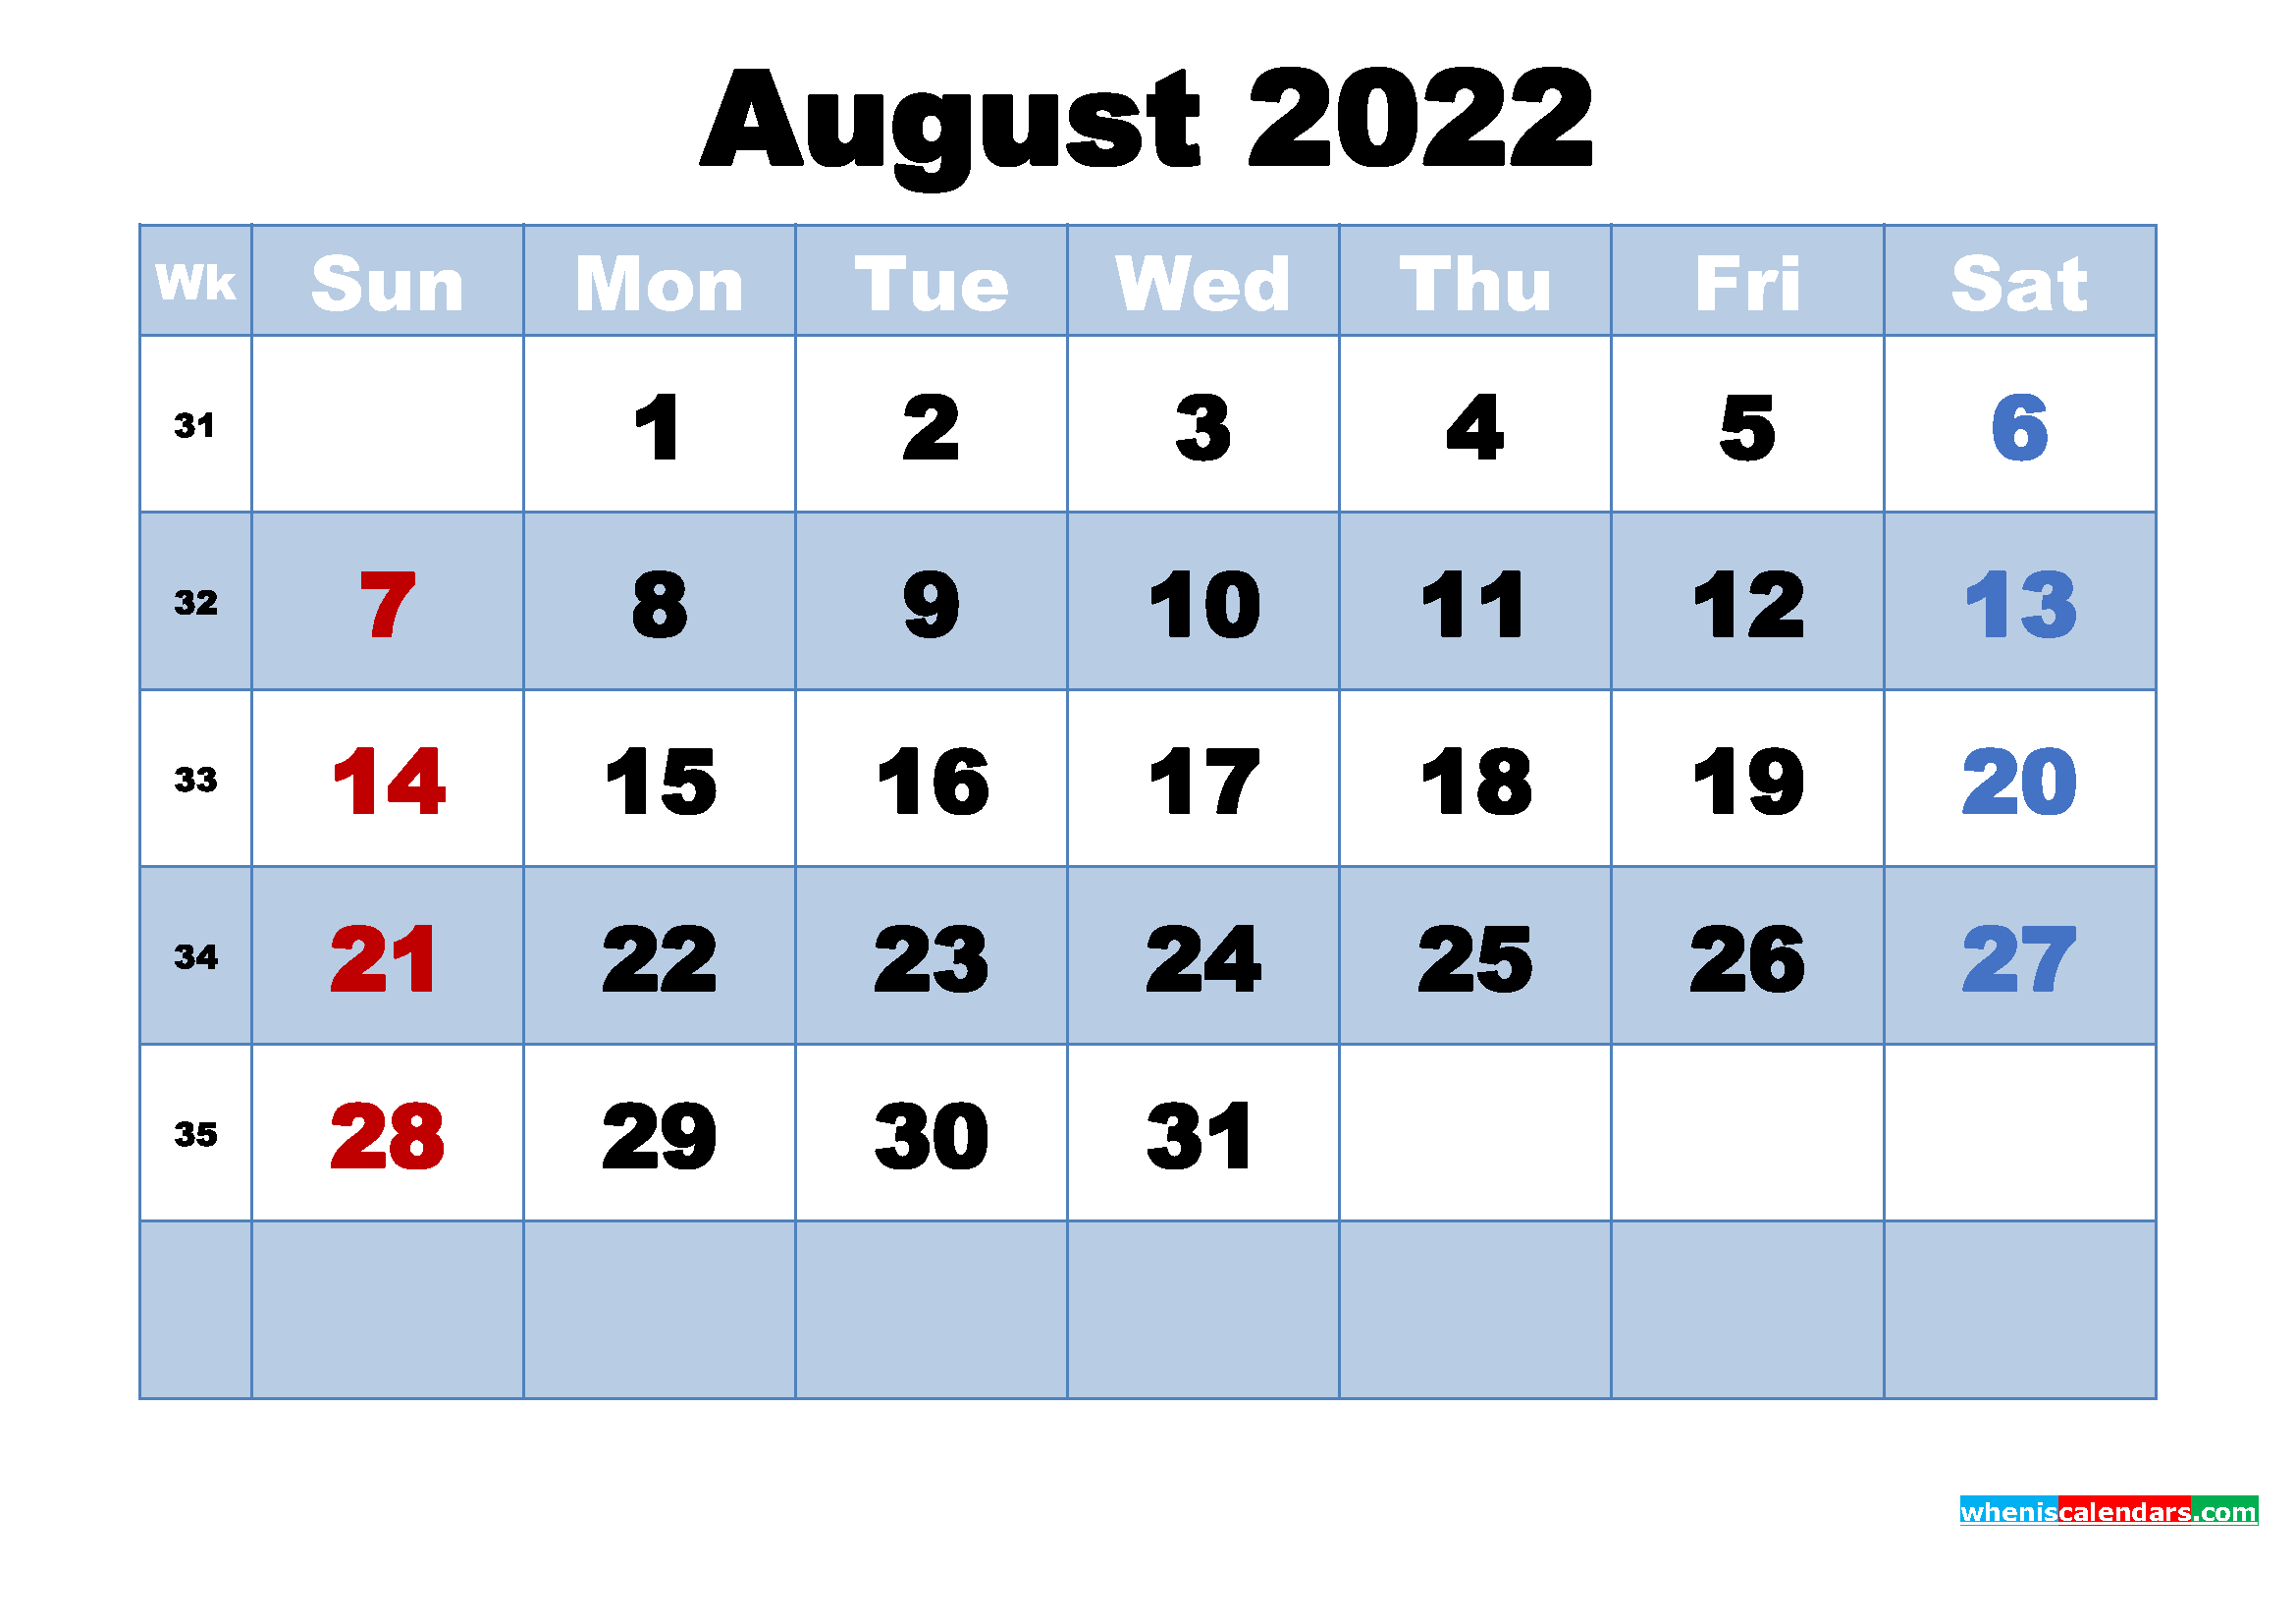 August 2022 Calendar With Holidays Printable  A Calendar For 2022